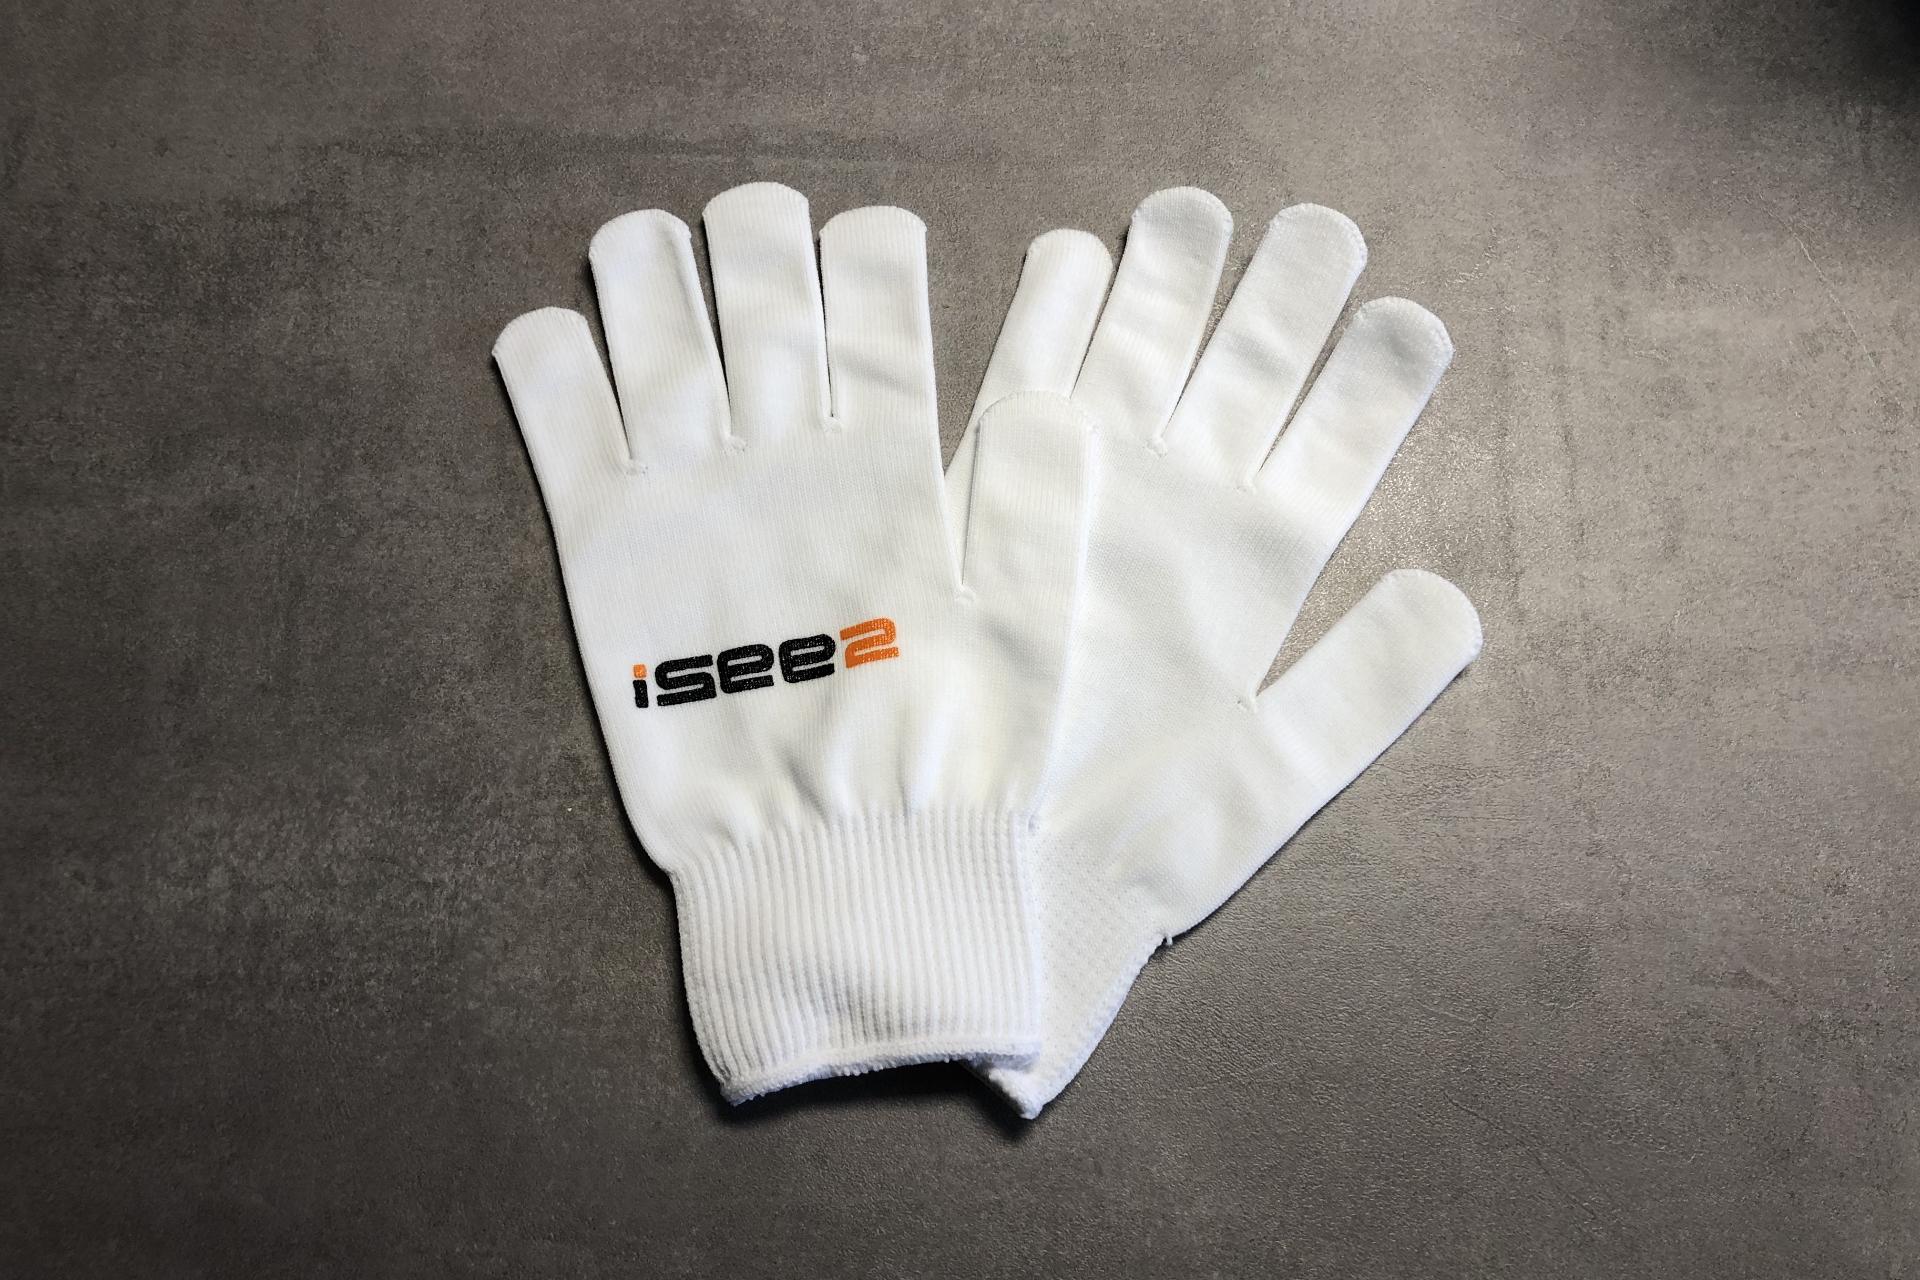 Foto: iSee2 Glove white / Verklebehandschuh - XL